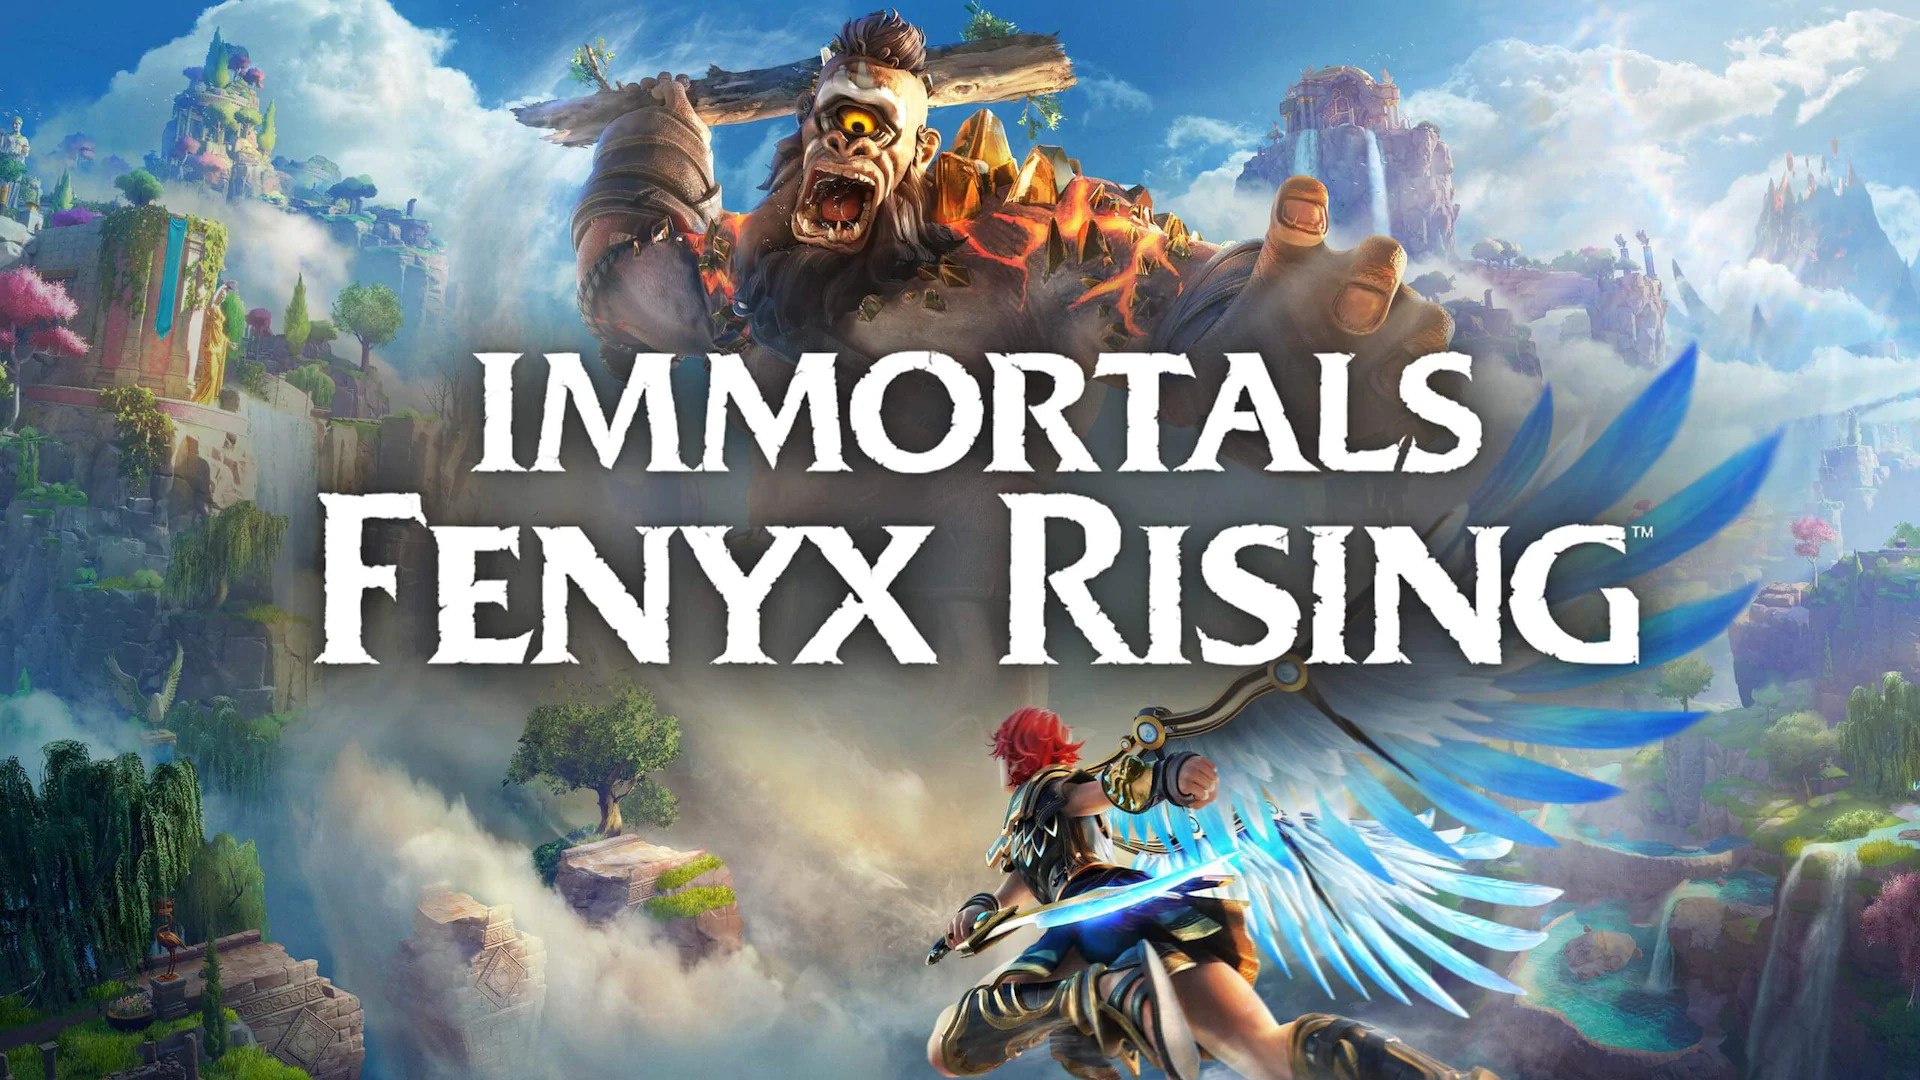 Immortals: Fenyx Rising (芬尼克斯傳說)。